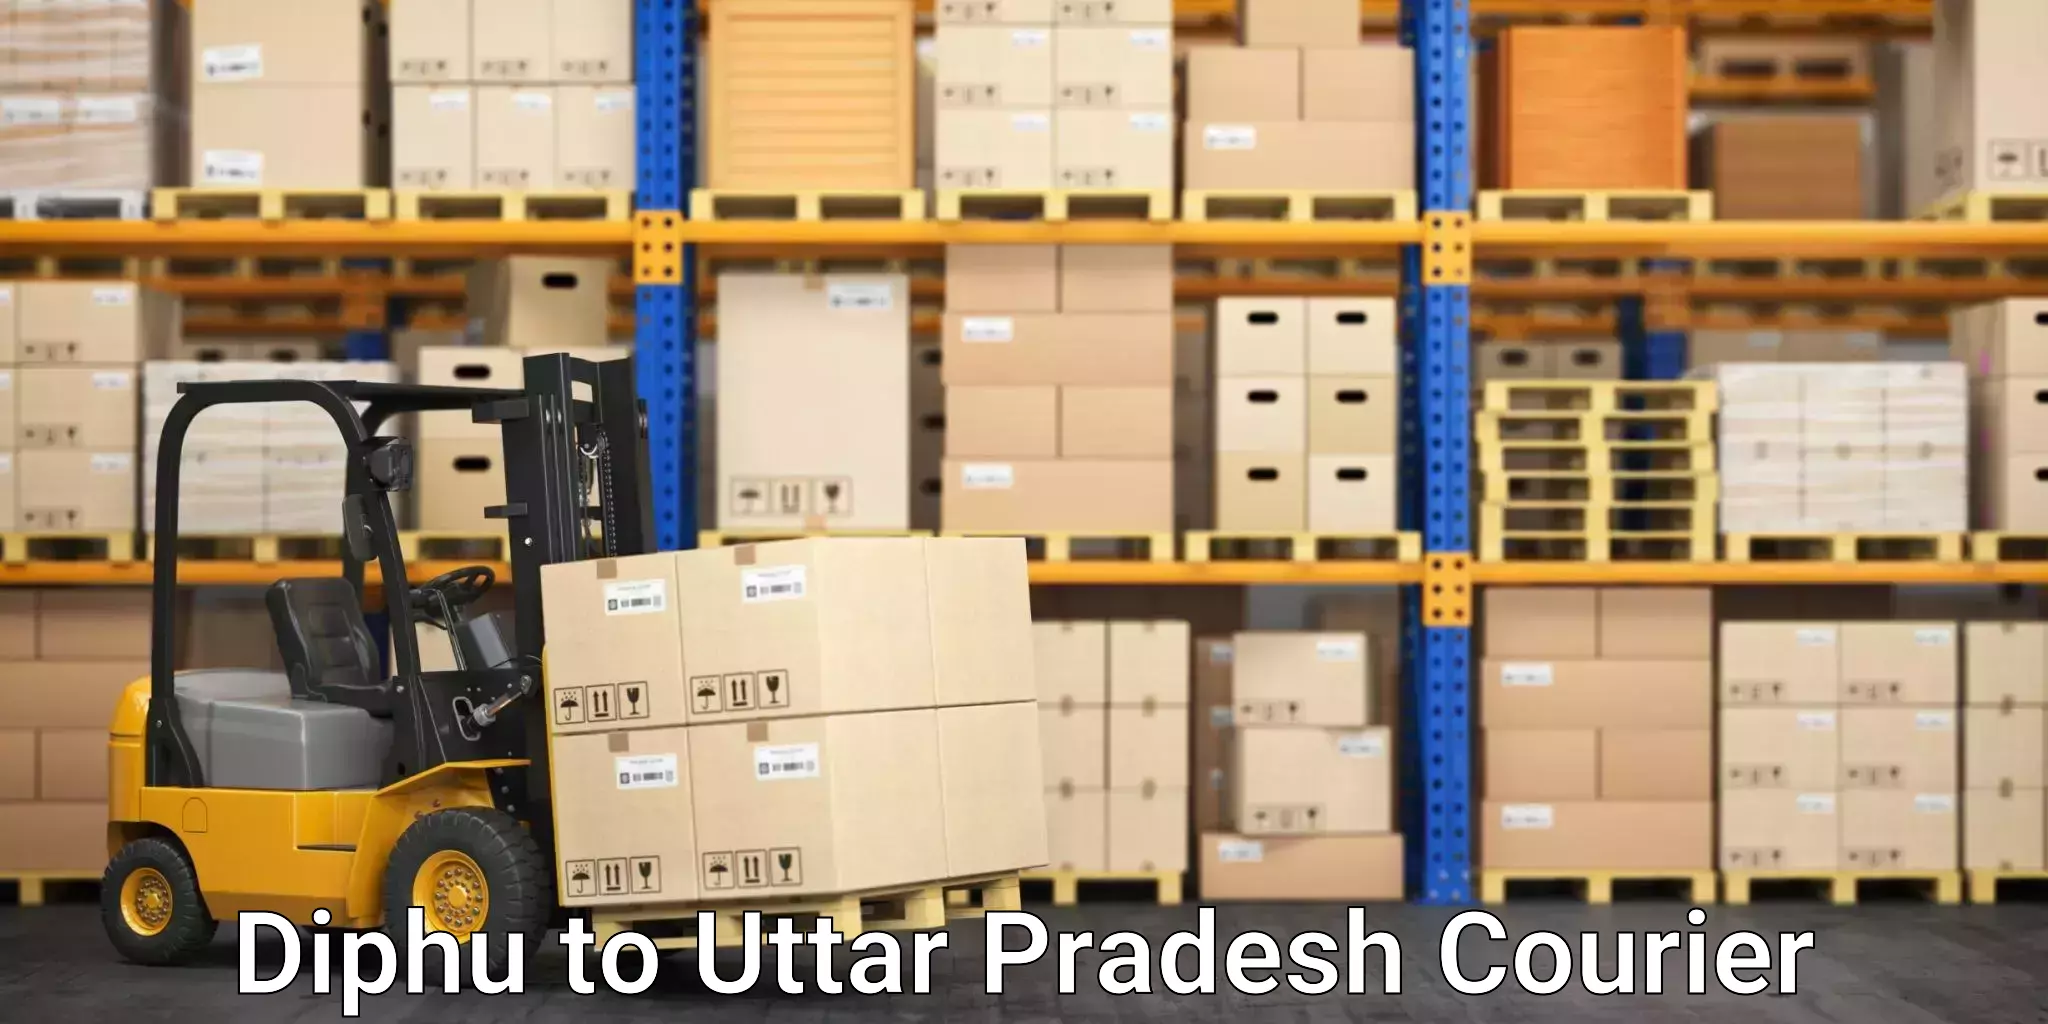 Corporate courier solutions Diphu to Ramnagar Varanasi